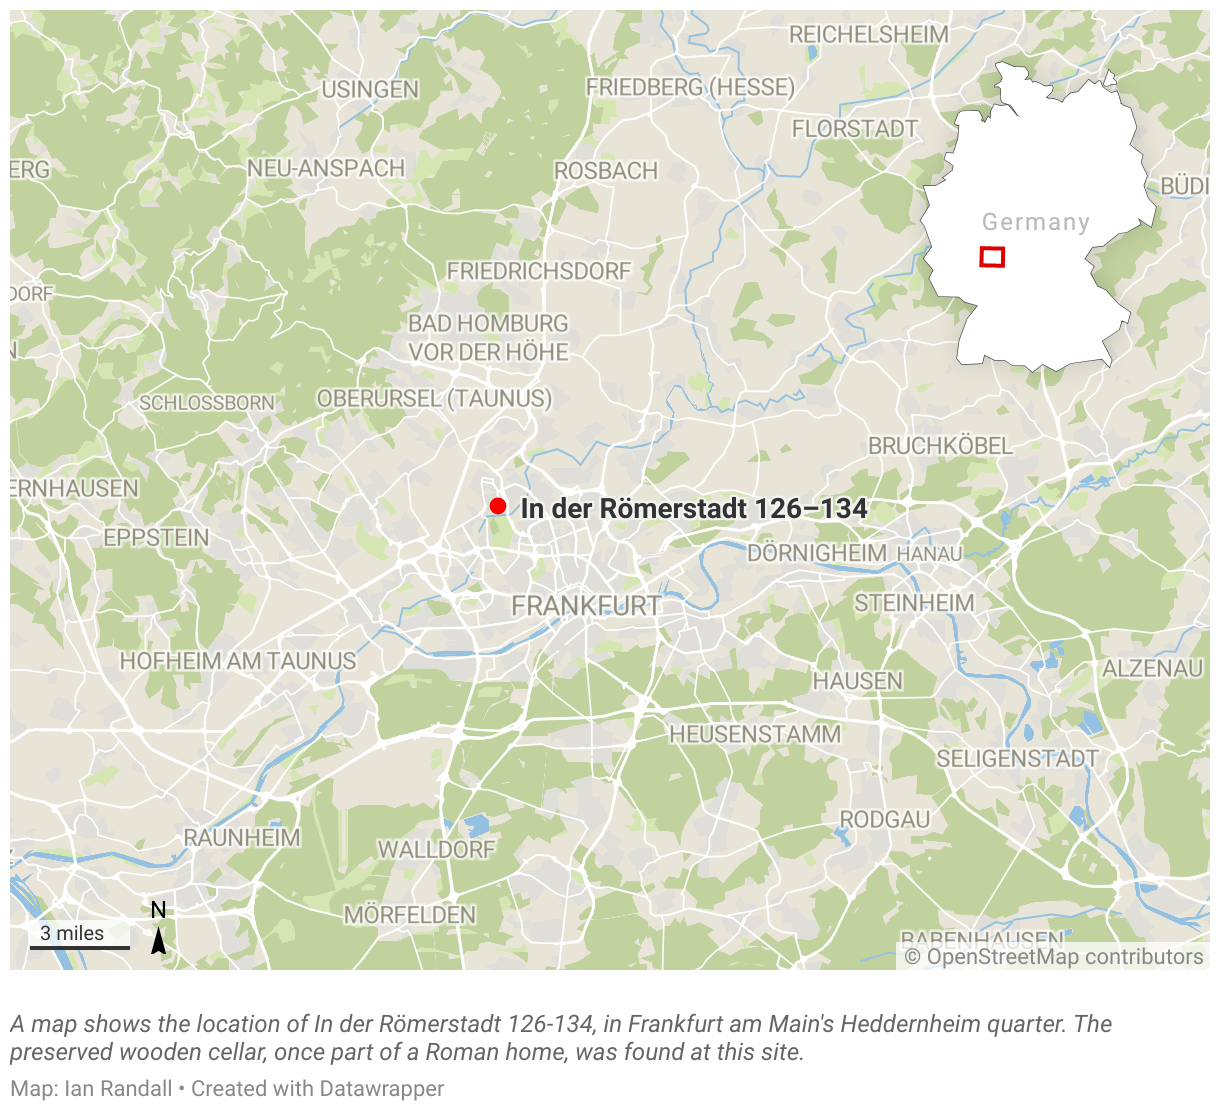 A map shows the location of In der Römerstadt 126-134, in Frankfurt am Main's Heddernheim quarter.